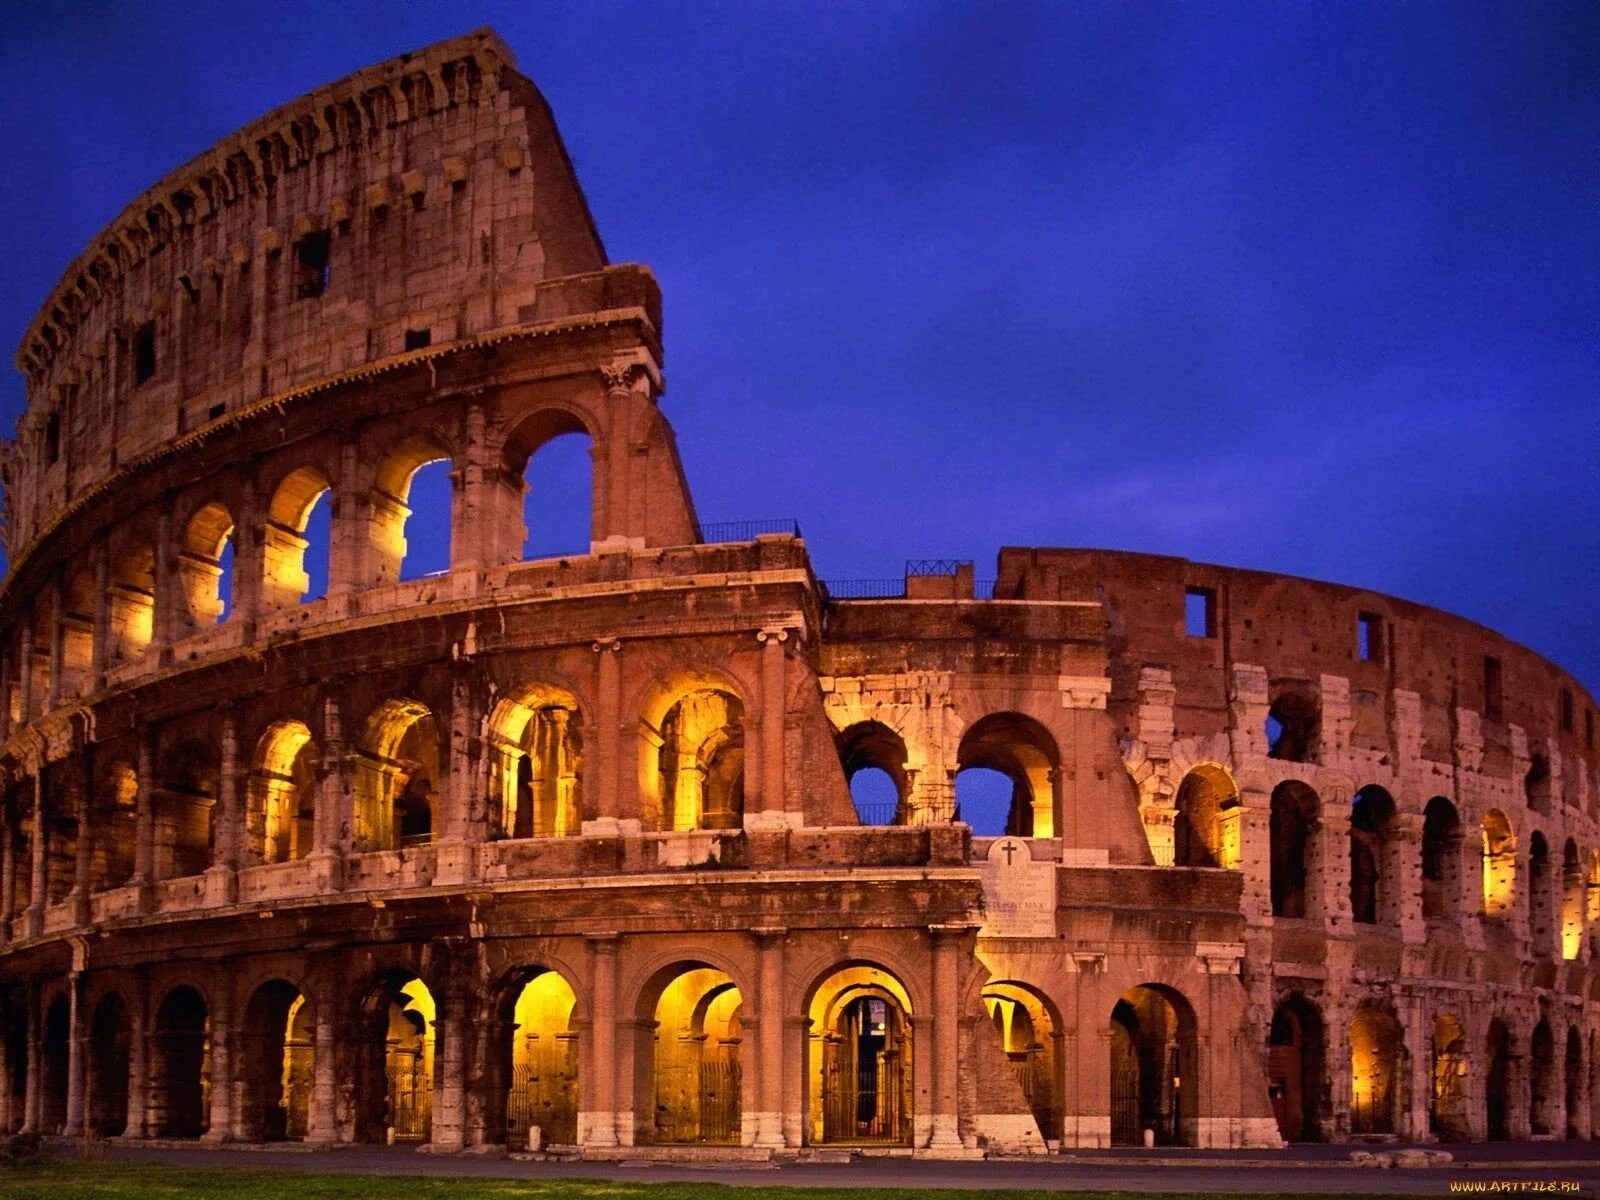 Название стран достопримечательности. Италия Колизей. Архитектура Италии Колизей. Италия столица Рим Колизей. Чудо света Римский Колизей в Италии.